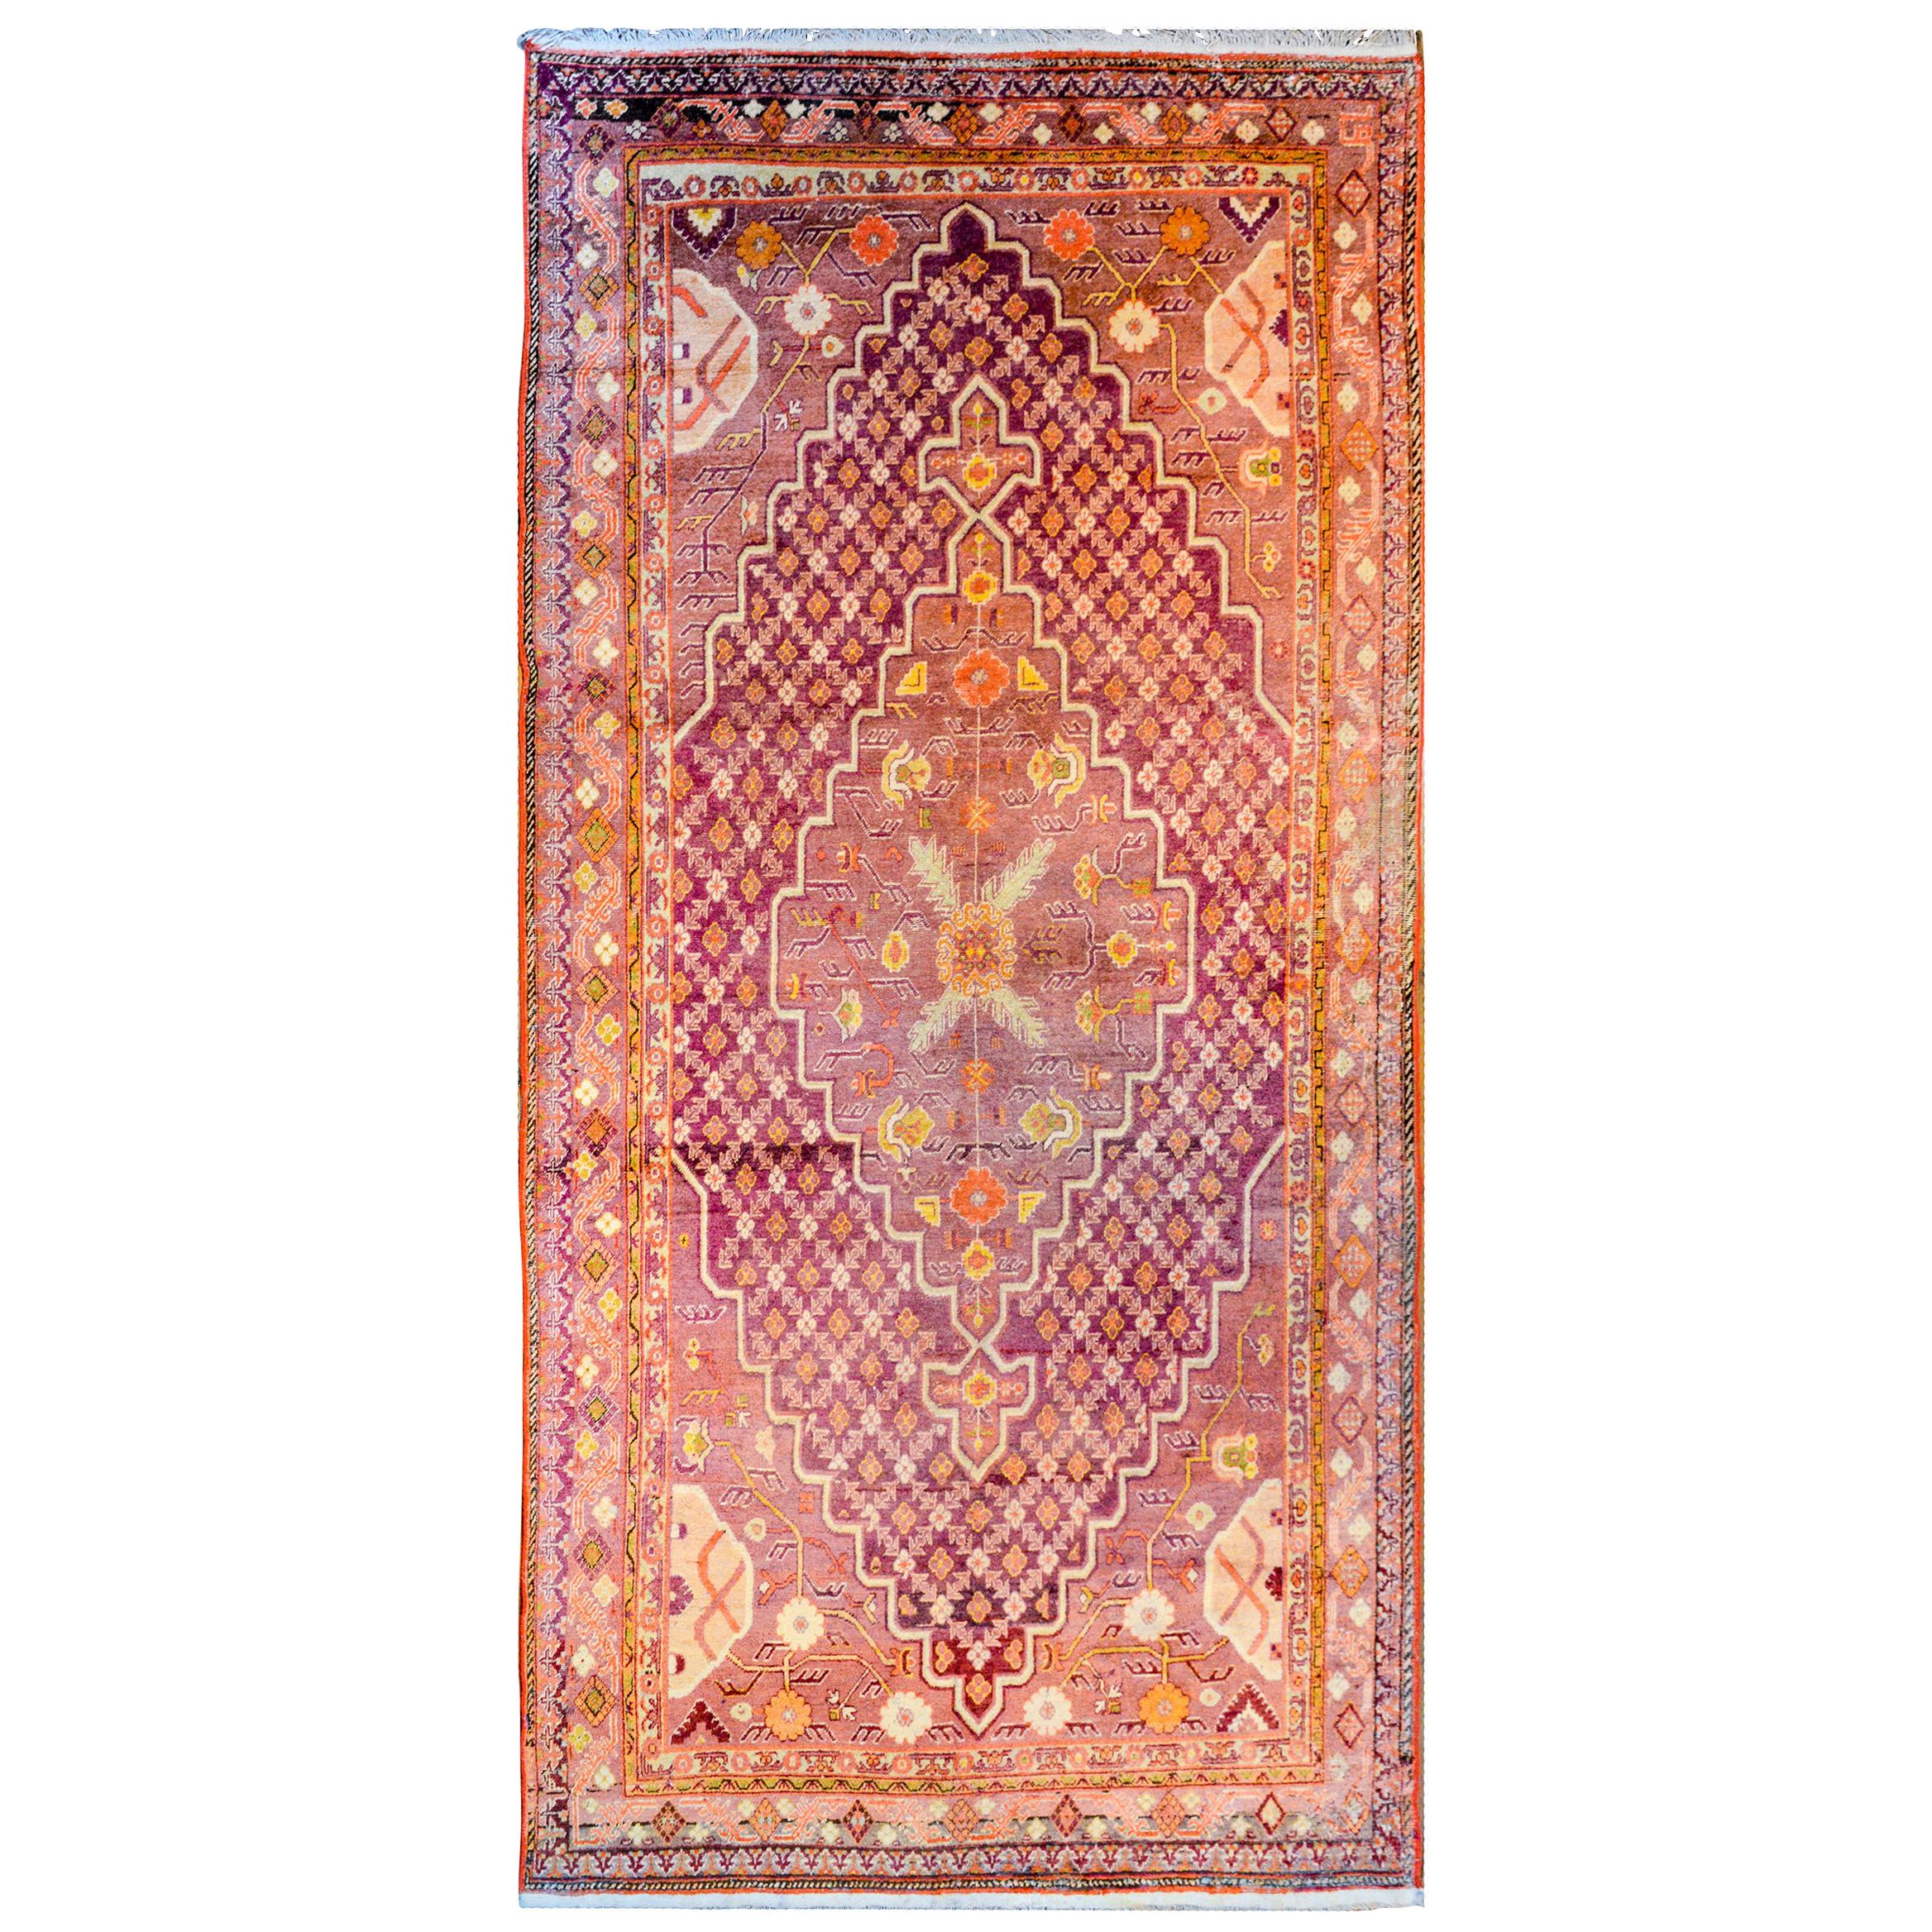 Außergewöhnlicher zentralasiatischer Khotan-Teppich aus dem frühen 20. Jahrhundert